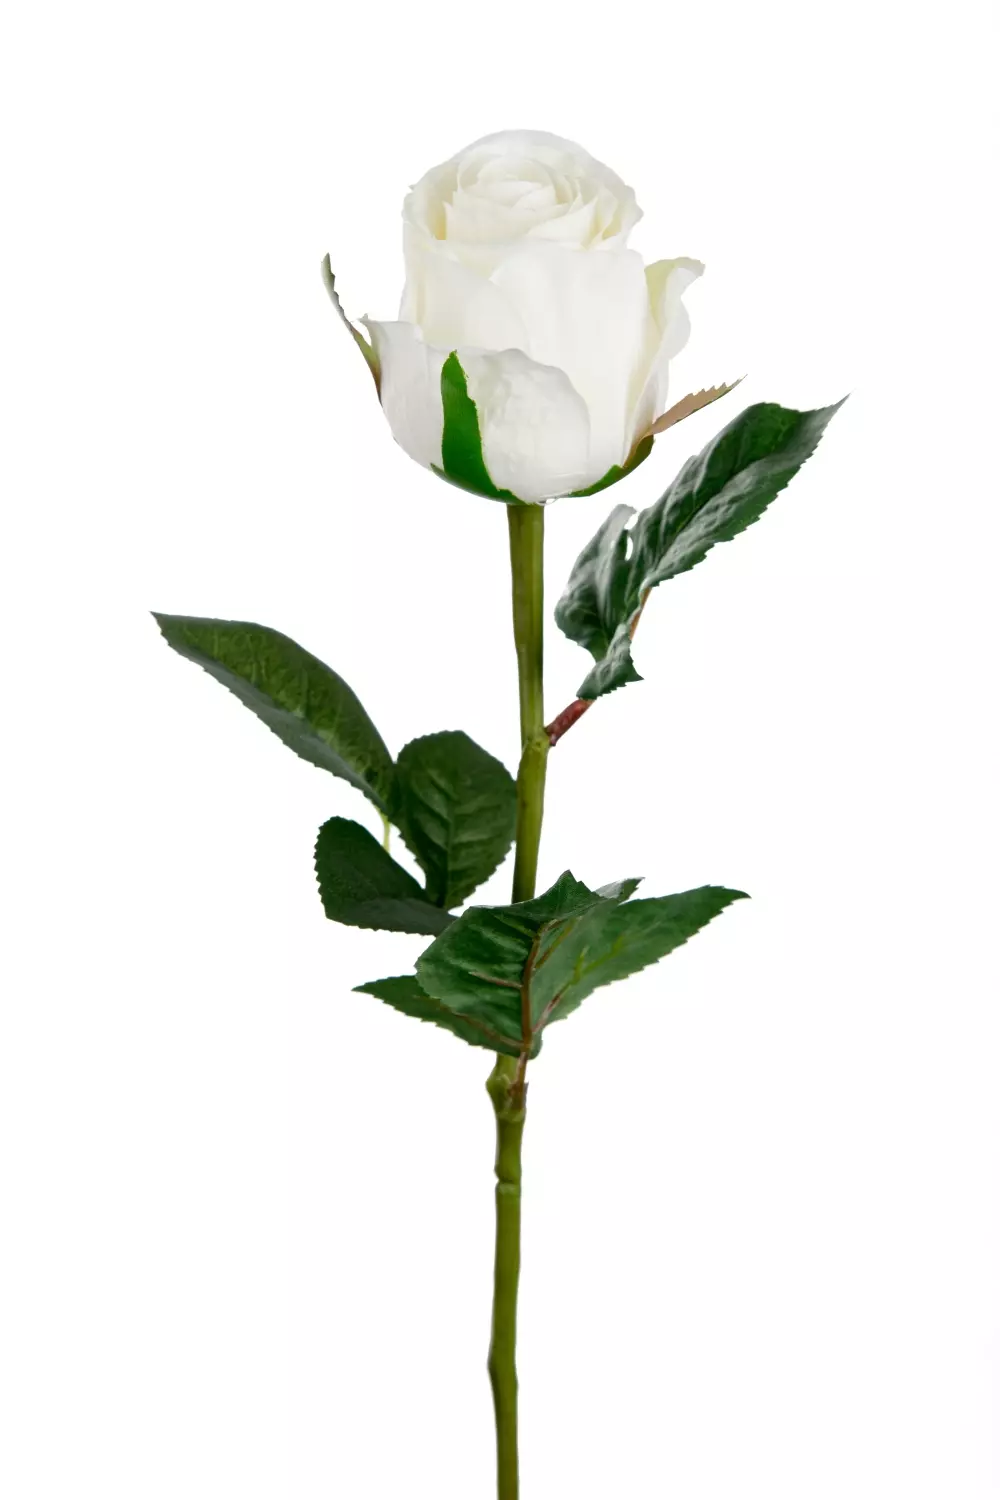 Rose Hvit H50 9603-10 7330026159608 Interiør Blomster og Planter Mr Plant